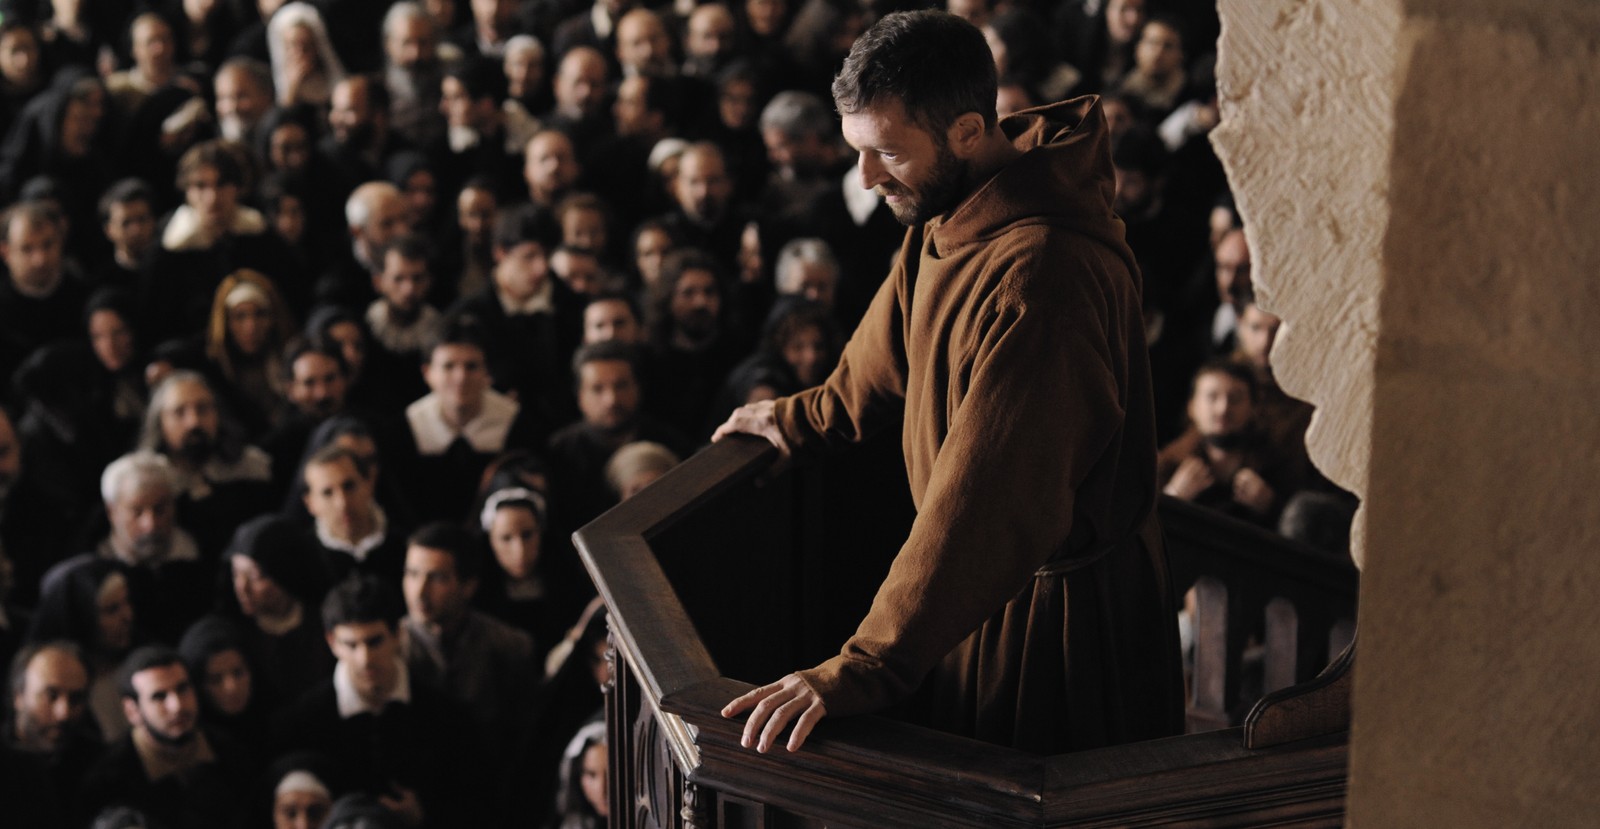 //www.occitanie-films.netUn moine (Vincent Cassel) s'adresse à une foule depuis la chaire d'une Eglise